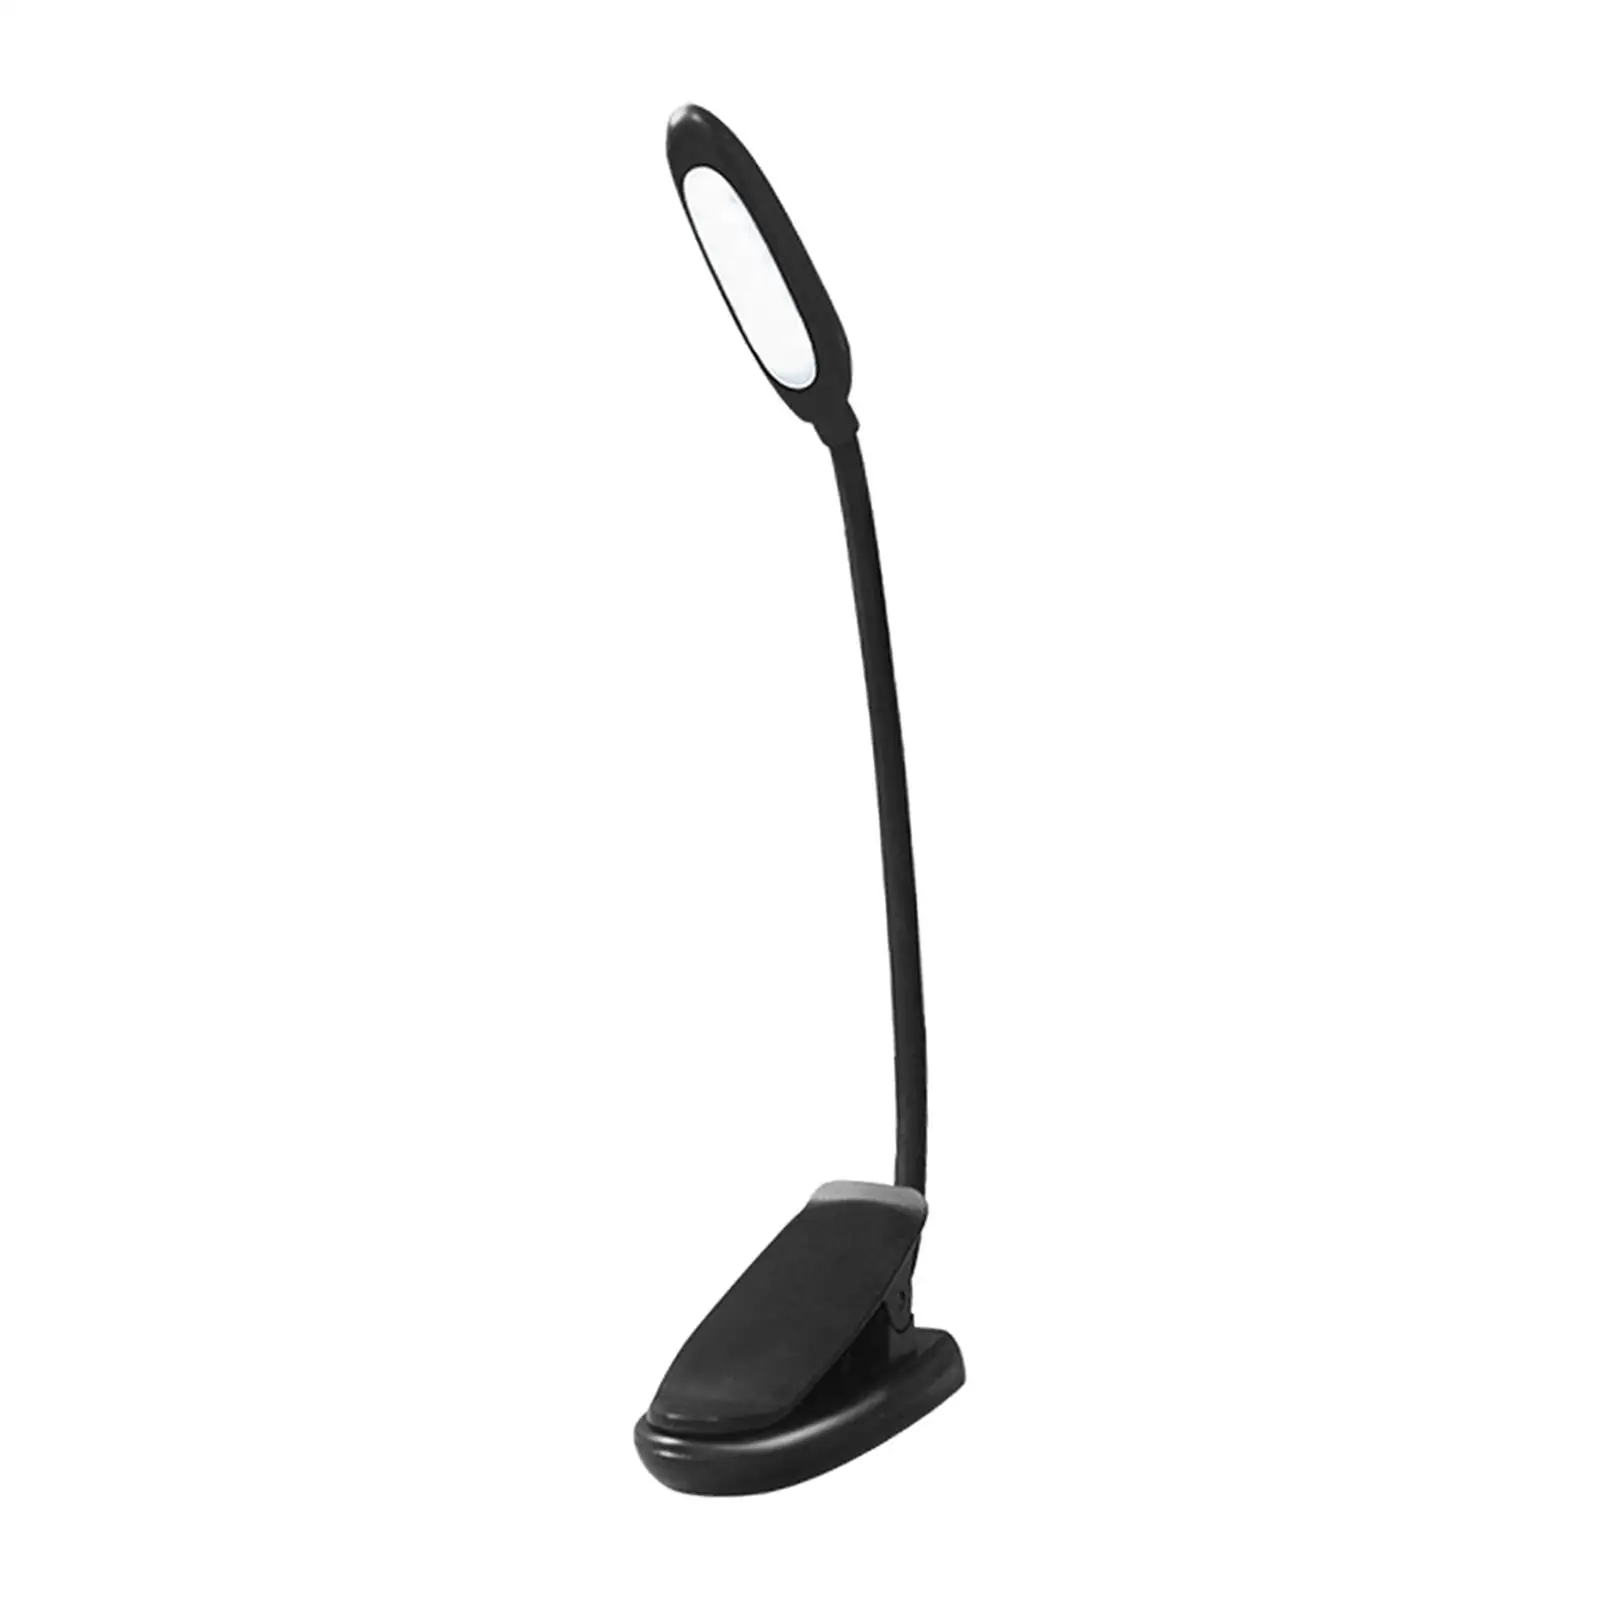 Portable LED Desk Lamp USB Rechargeable Eye Protection Night Light Reading Light Clip On Light for Living Room Bedroom Home Dorm